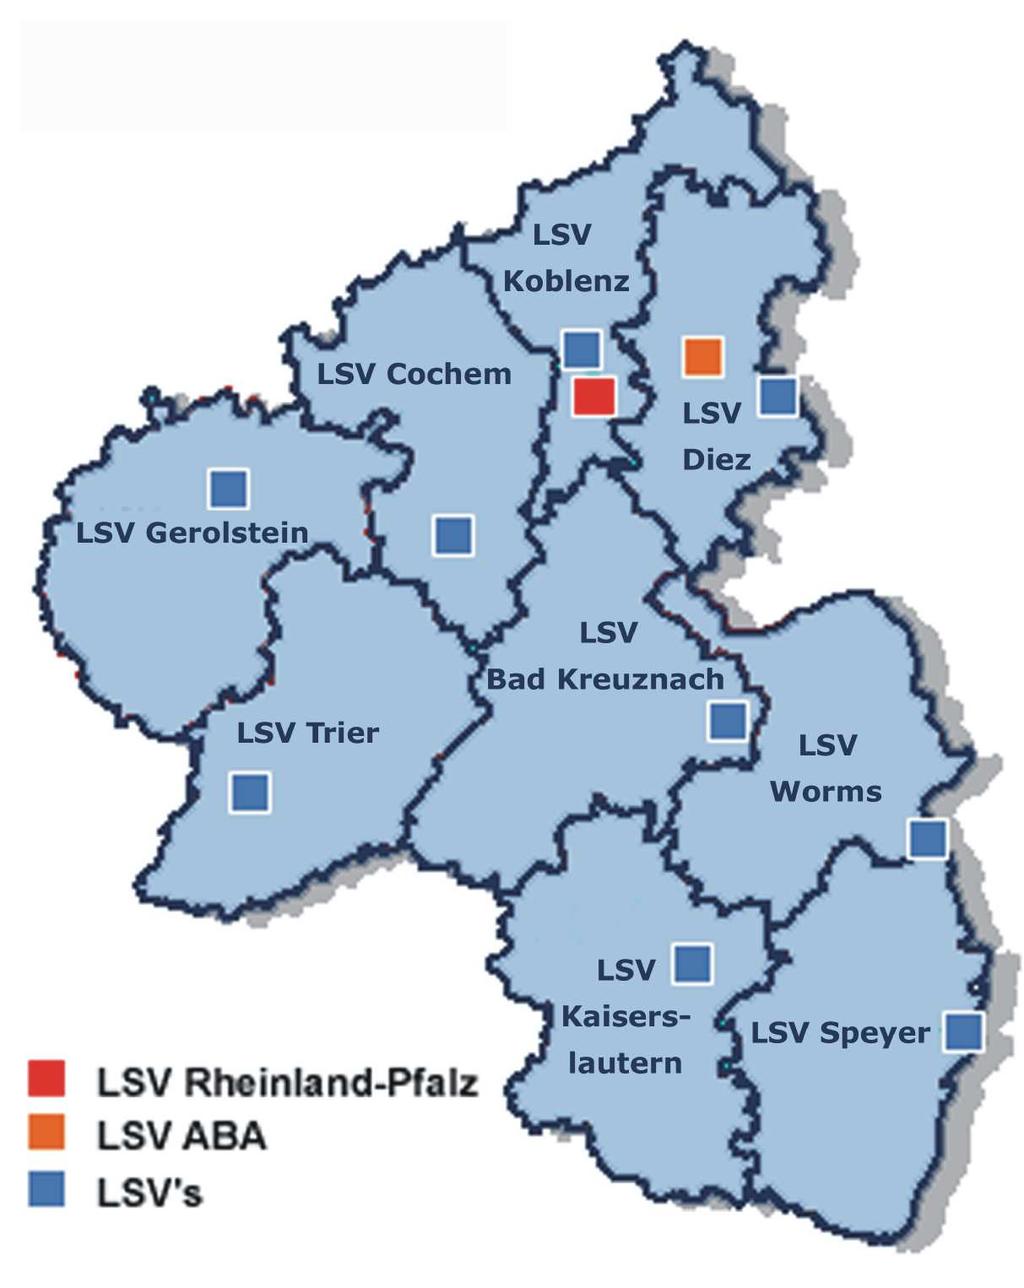 Verteilung der Standorte zu betreuendes Strassennetz im Landesbetrieb Mobilität RLP: 870 km Bundesautobahnen 3.000 km Bundesstraßen 7.200 km Landesstraßen 7.400 km Kreisstraßen Σ 18.